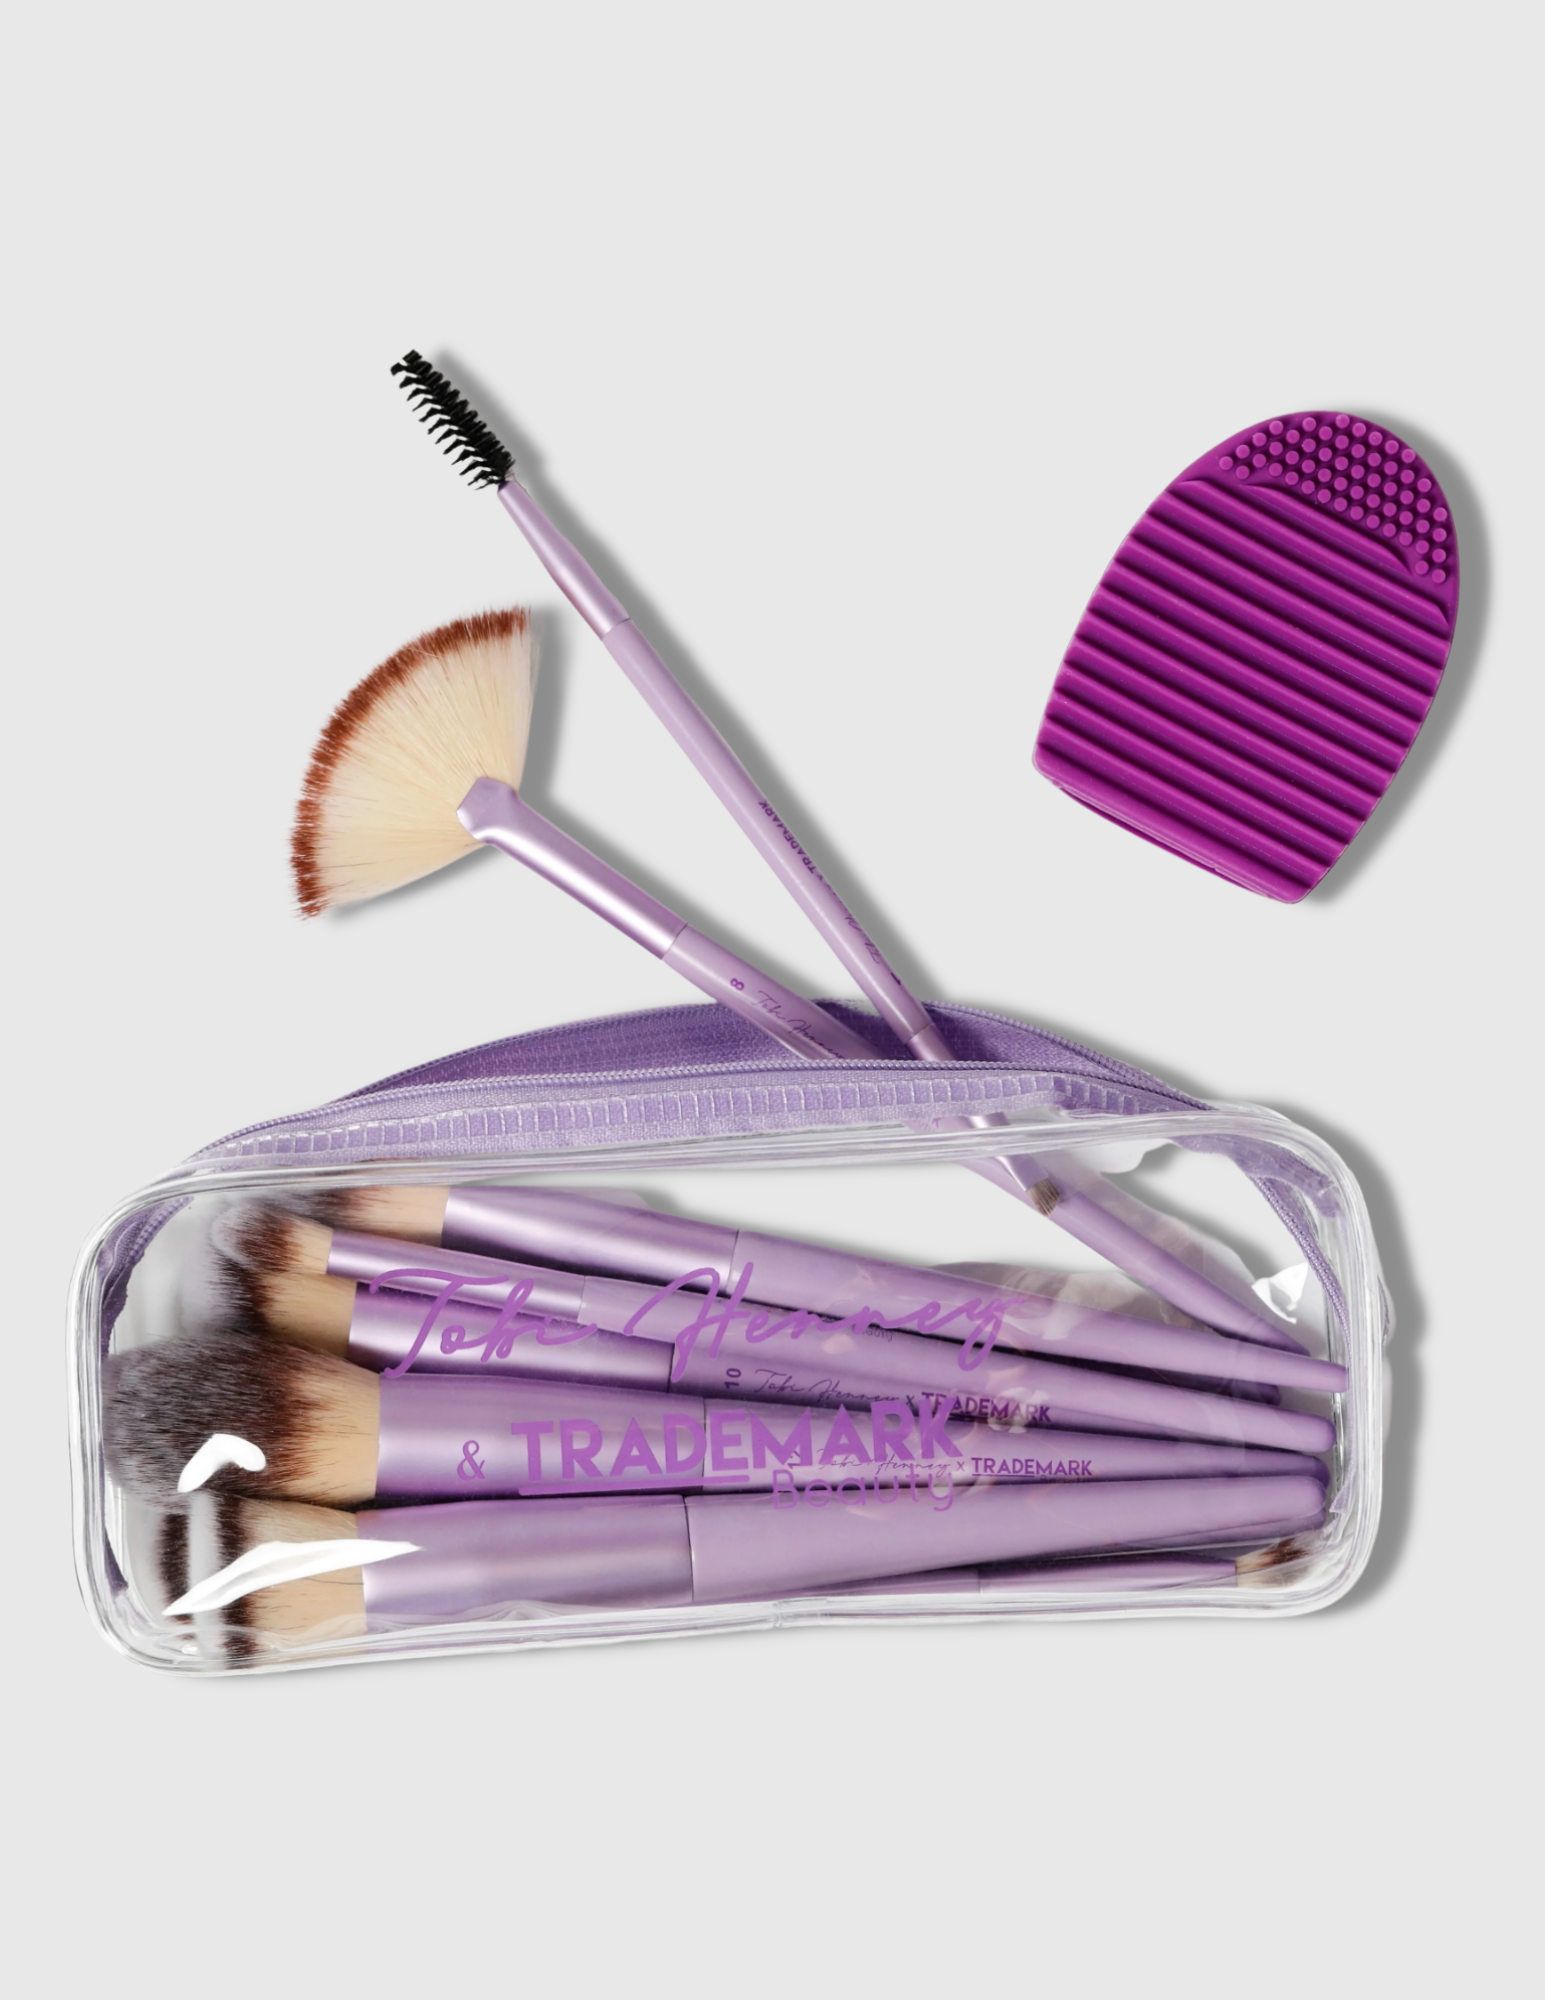 Highlighter Makeup Brush - #8 - Trademark Beauty